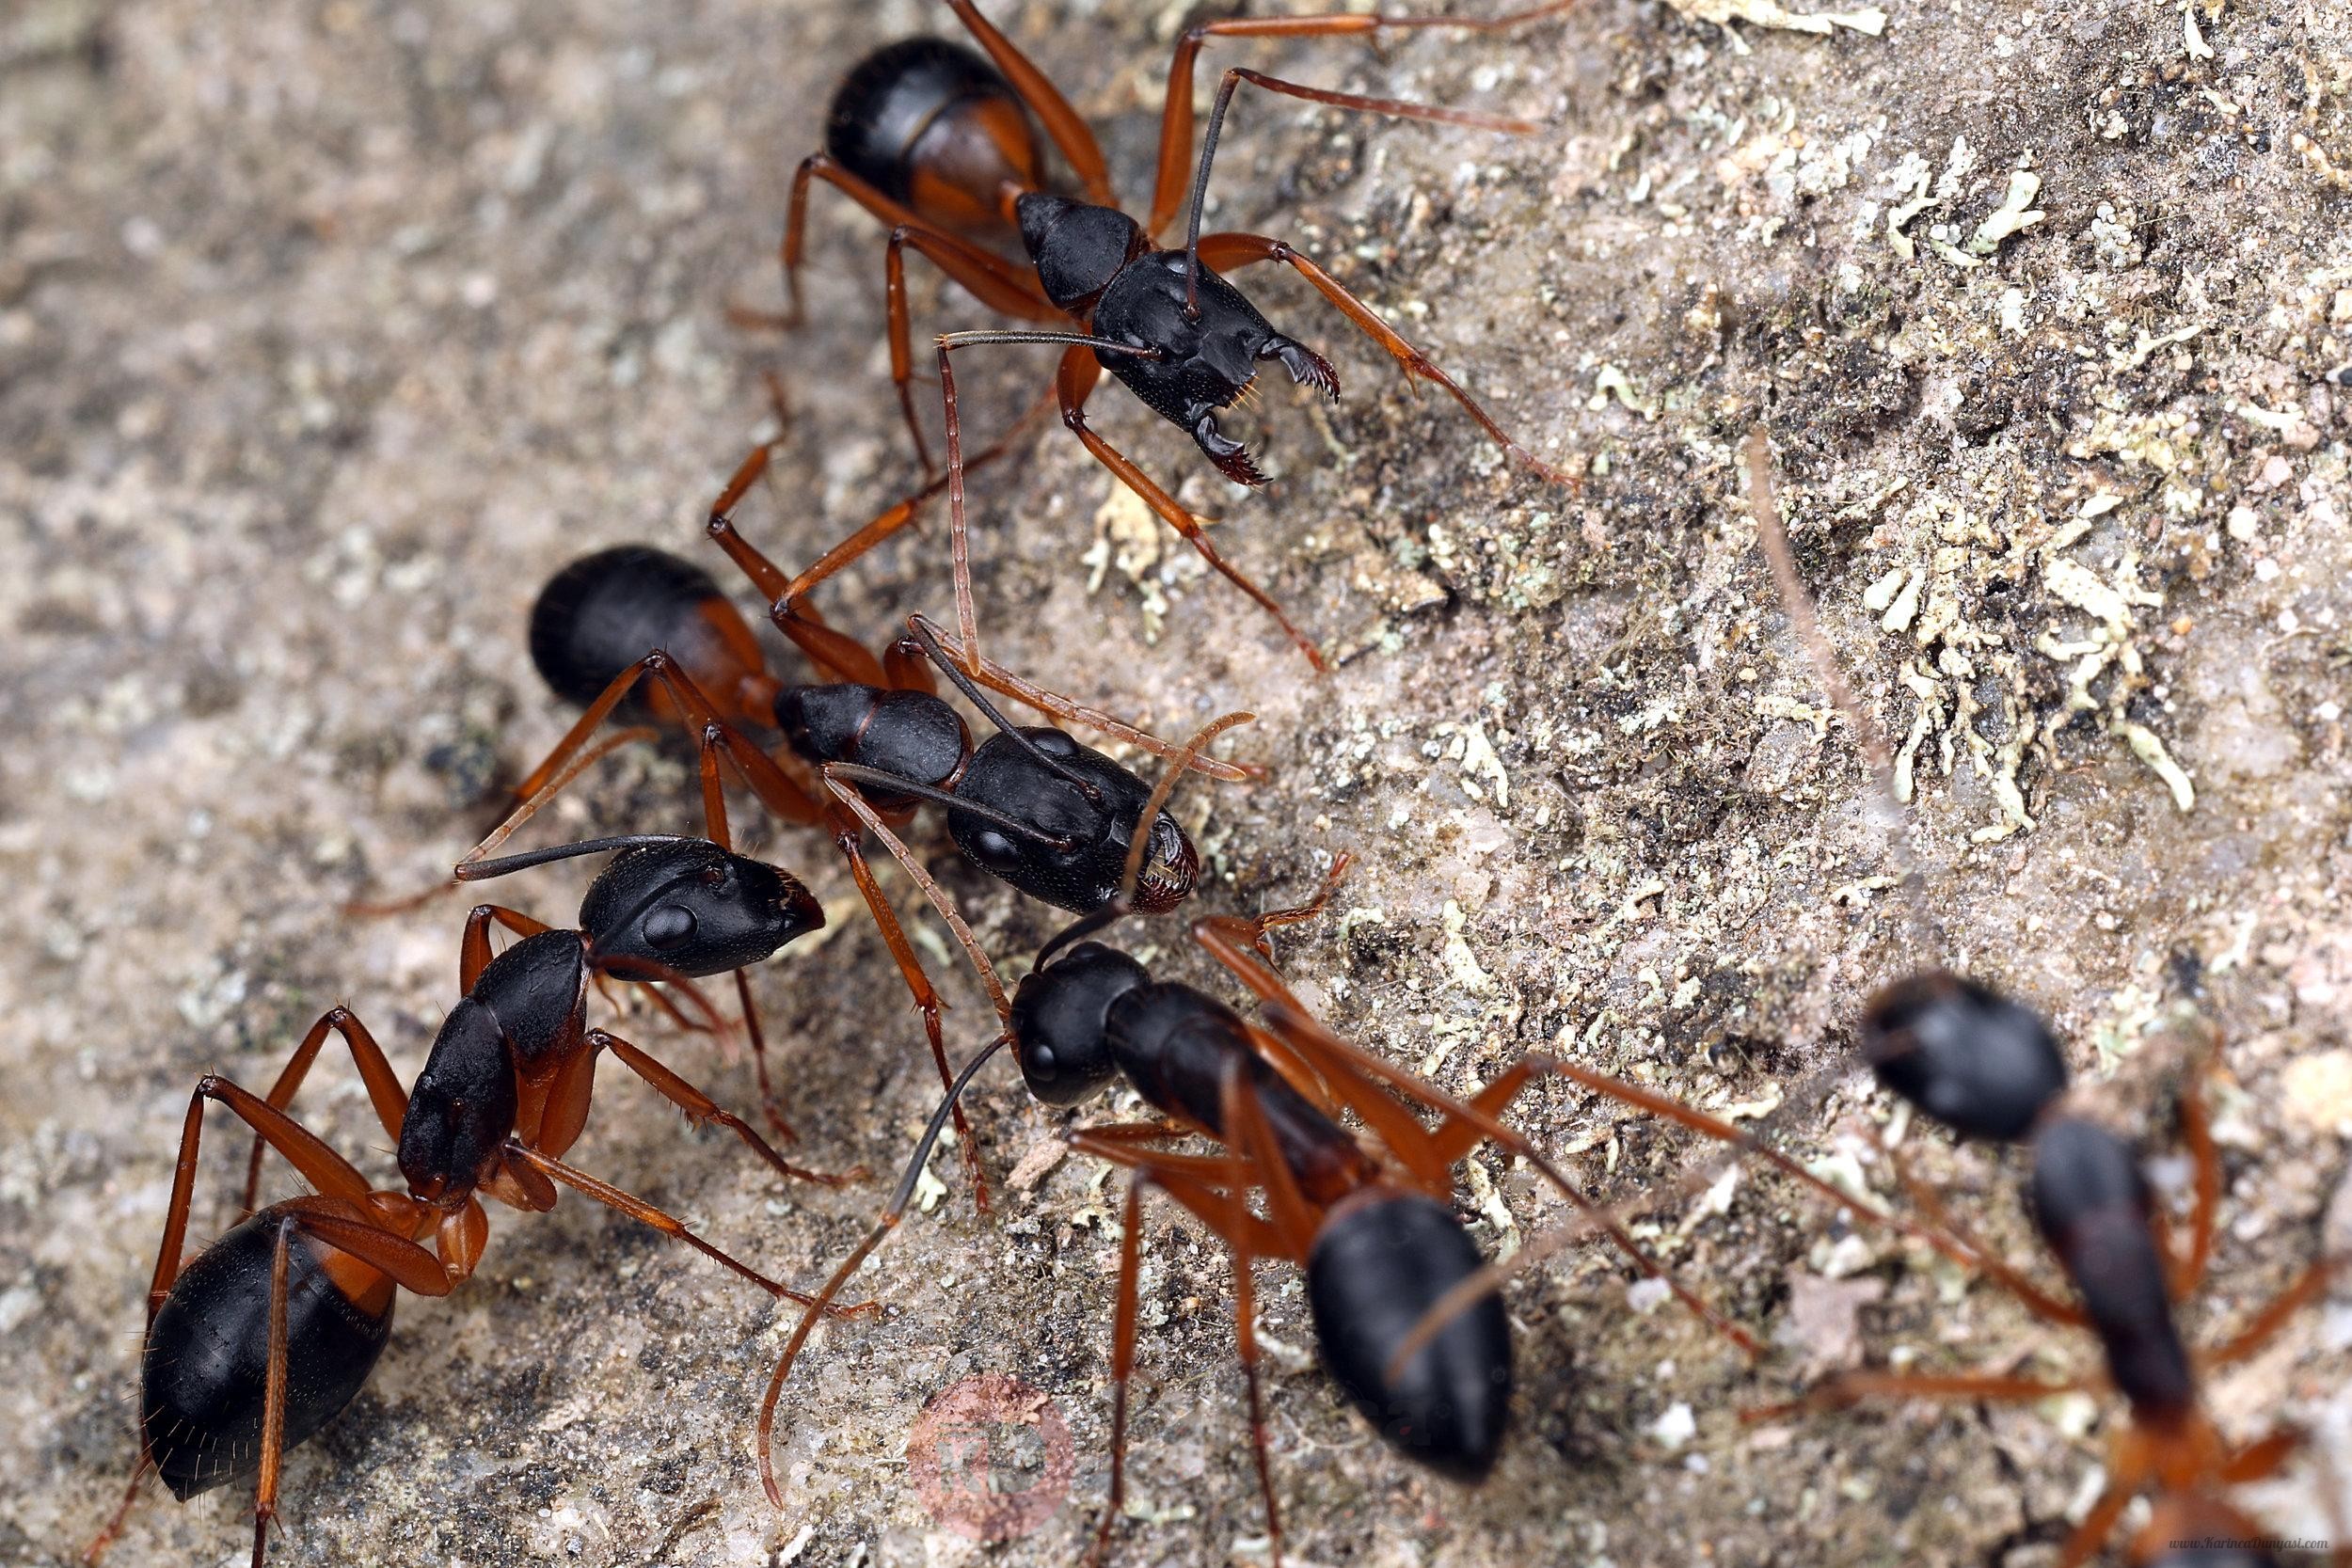 Camponotus+consobrinus+black.jpg